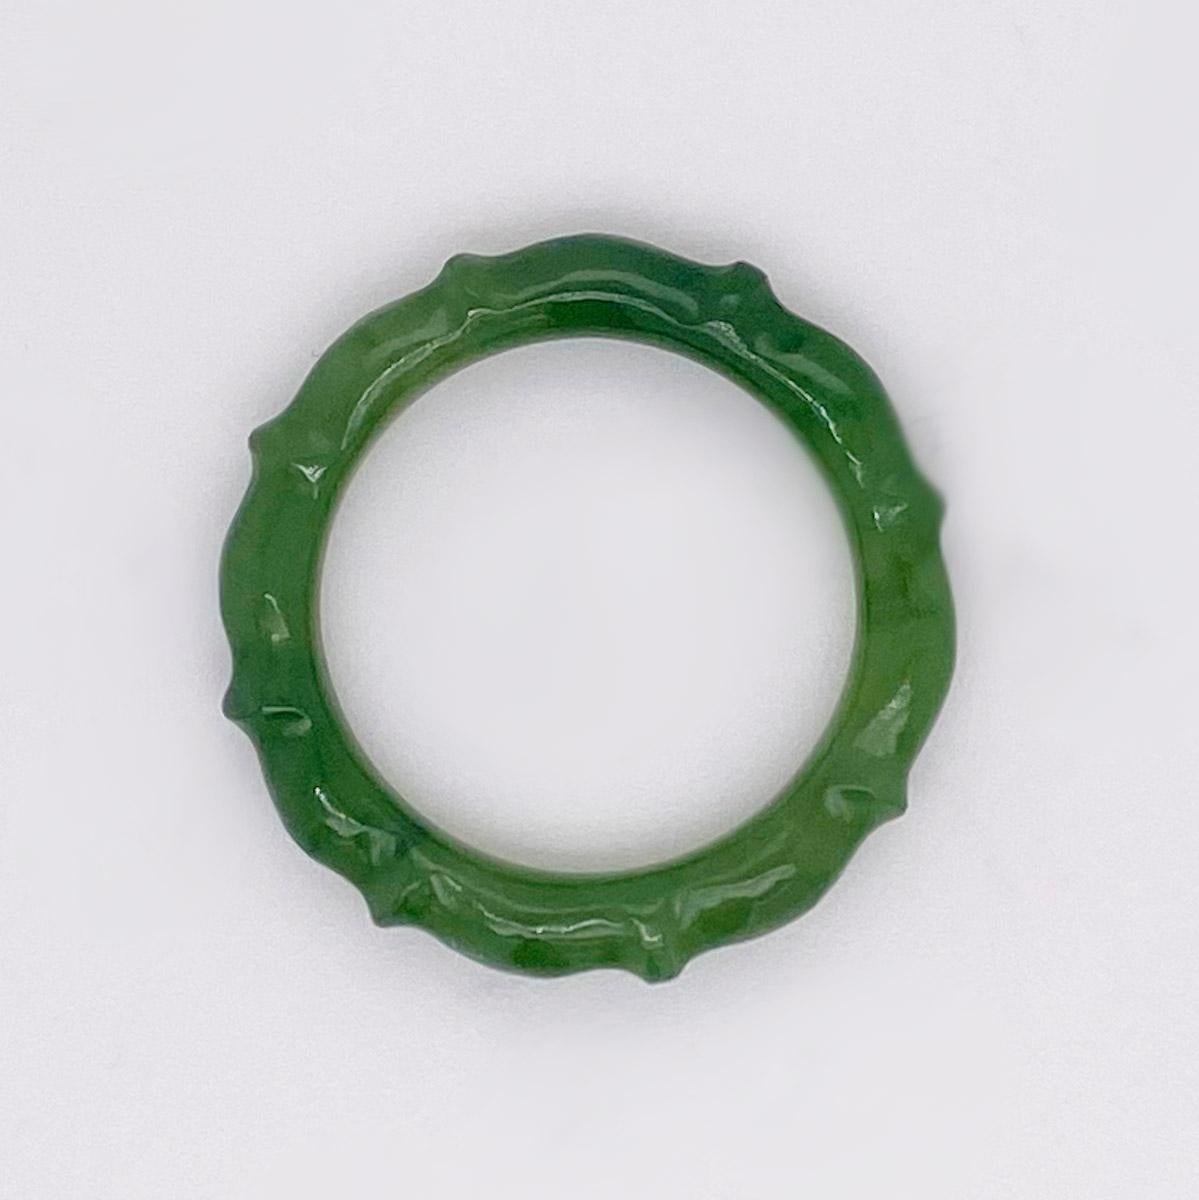 Cette authentique bague en jade naturel présente un magnifique motif sculpté pour l'éternité. Ce bracelet en jade est d'un vert profond magnifique qui se marie bien avec n'importe quel autre métal - platine, or ou argent sterling. Si vous en